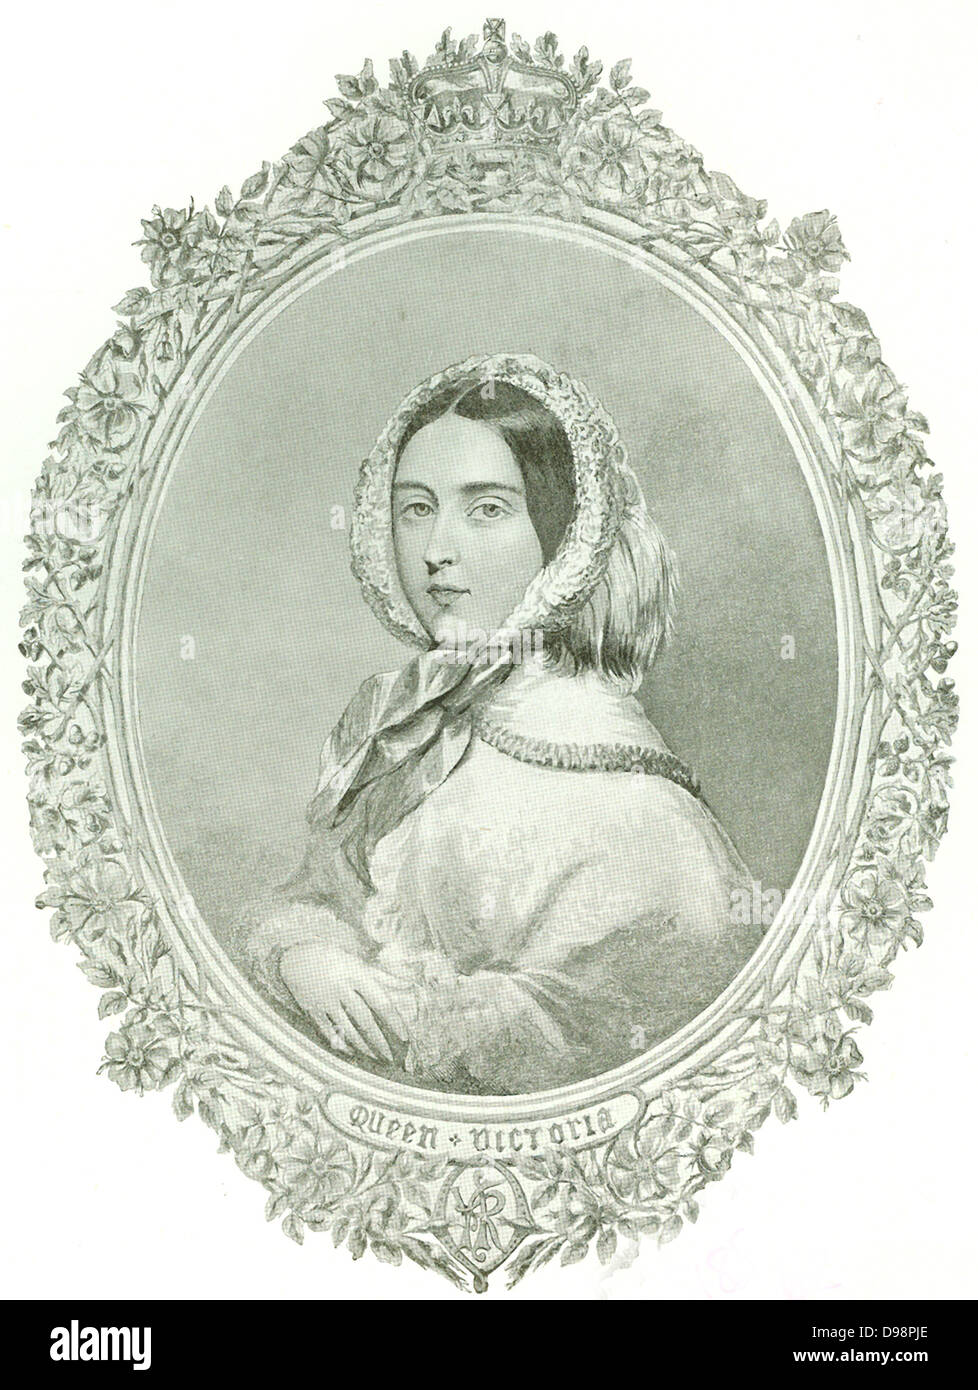 La reina Victoria. Esta imagen representa a la reina en el año 1876, cuando ella asumió el título de "Emperatriz de la India". Foto de stock